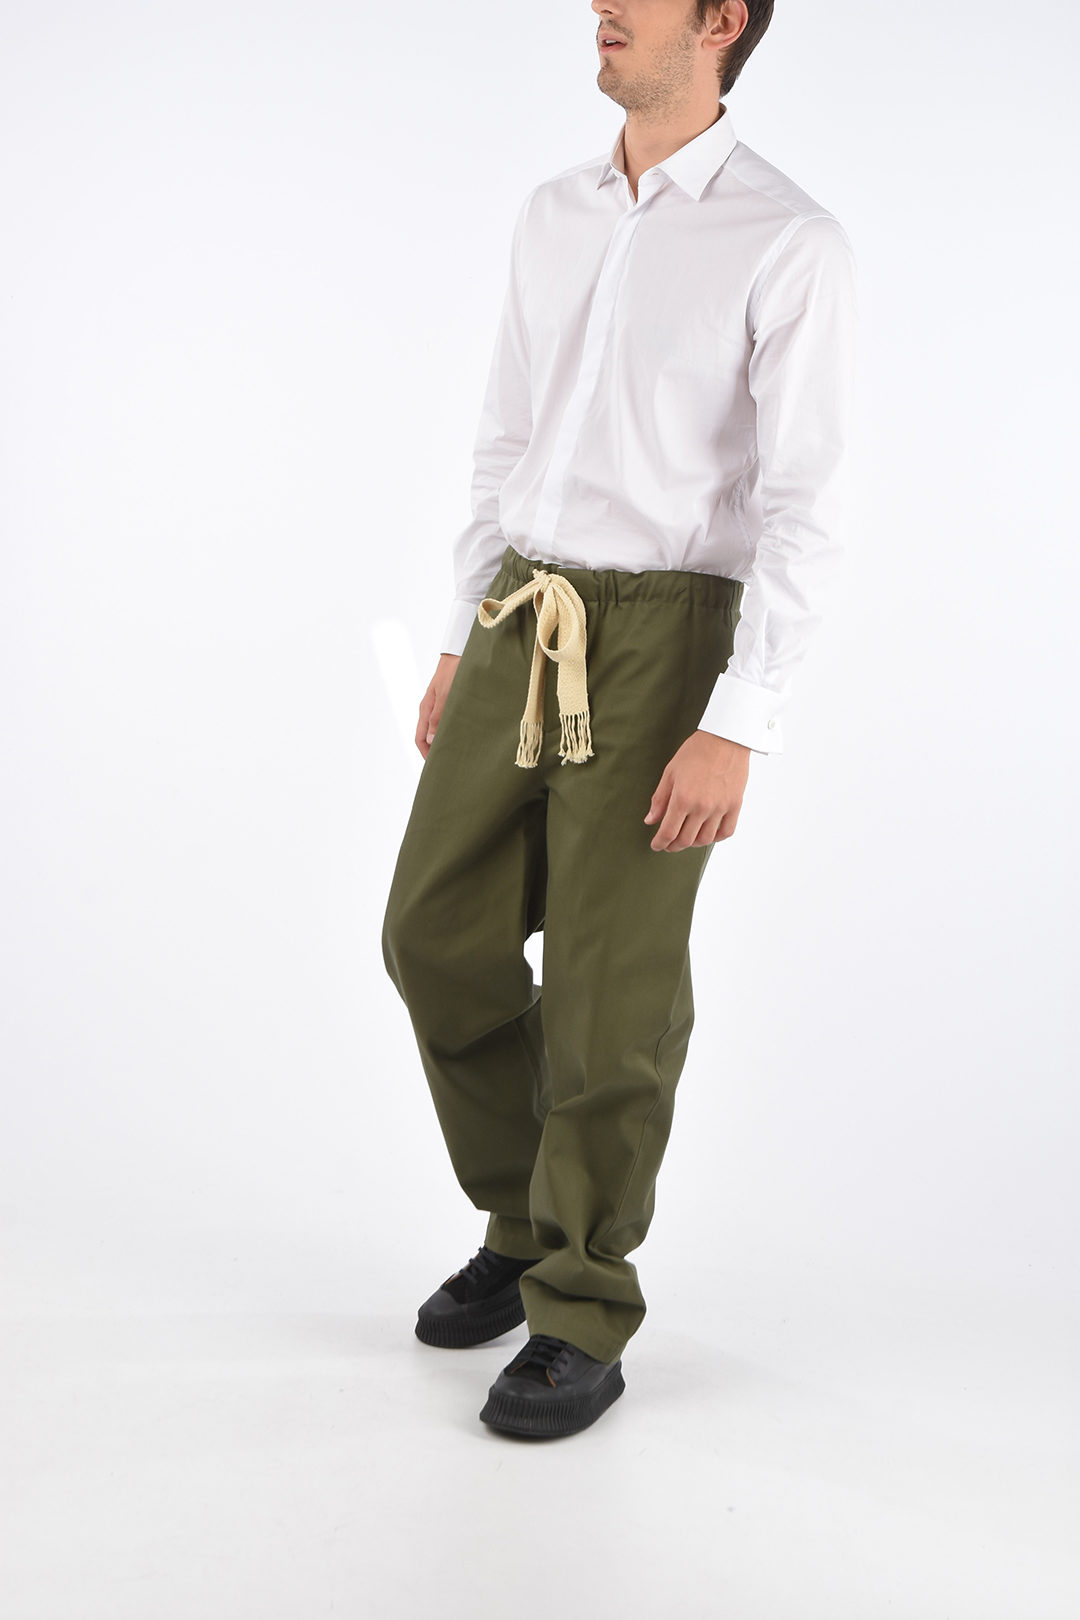 Loewe Drawstring Pants men - Glamood Outlet